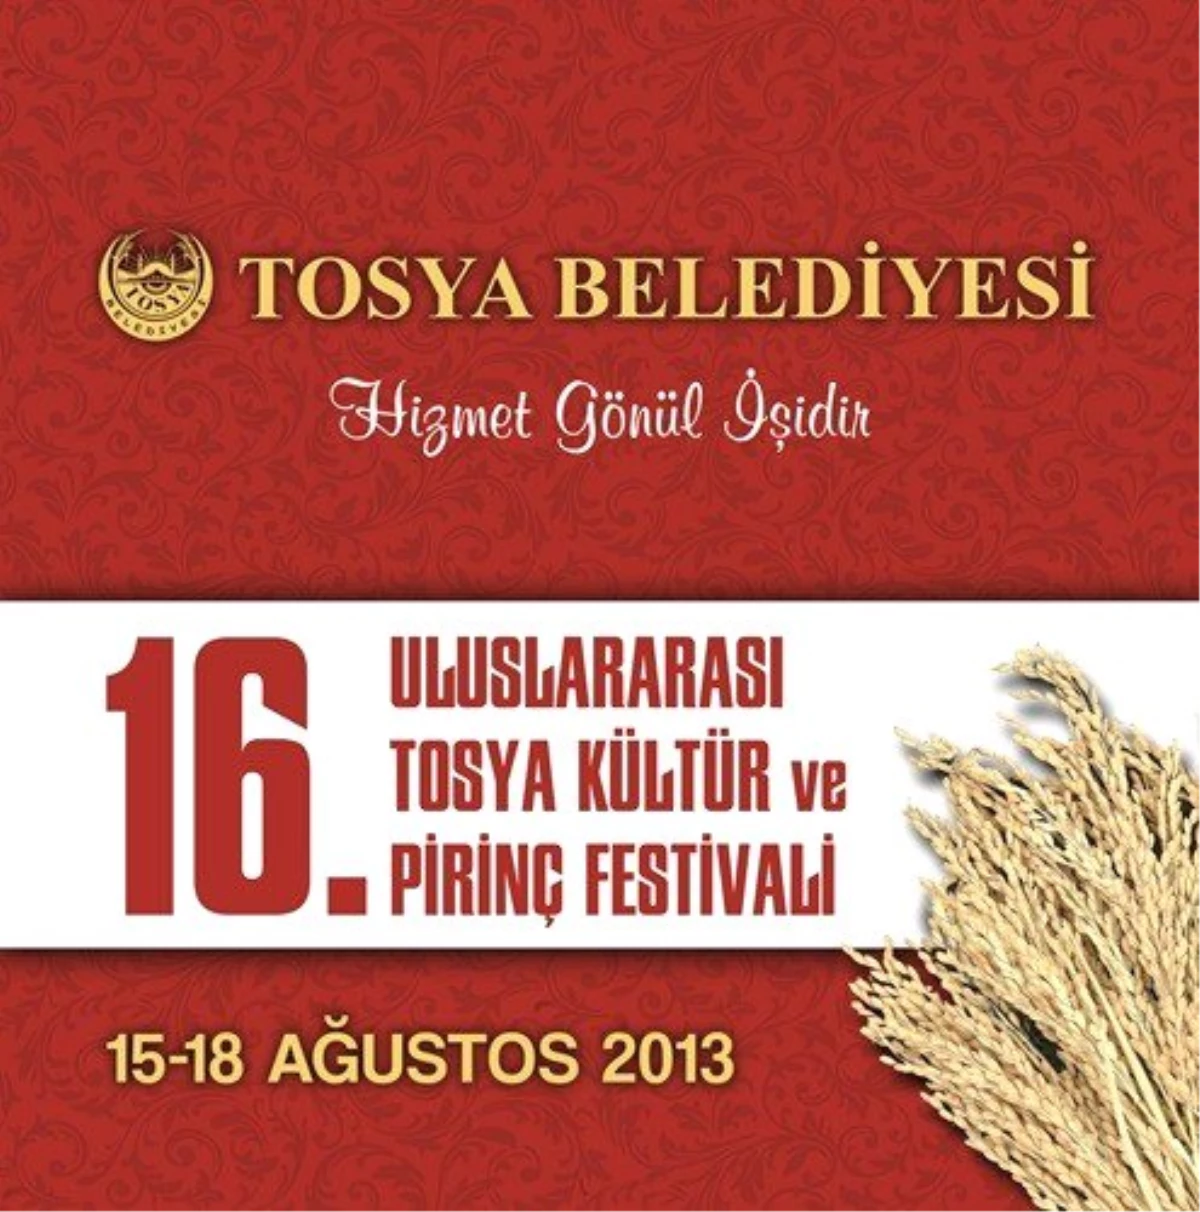 Tosya Kültür ve Pirinç Festivali Programı Belli Oldu